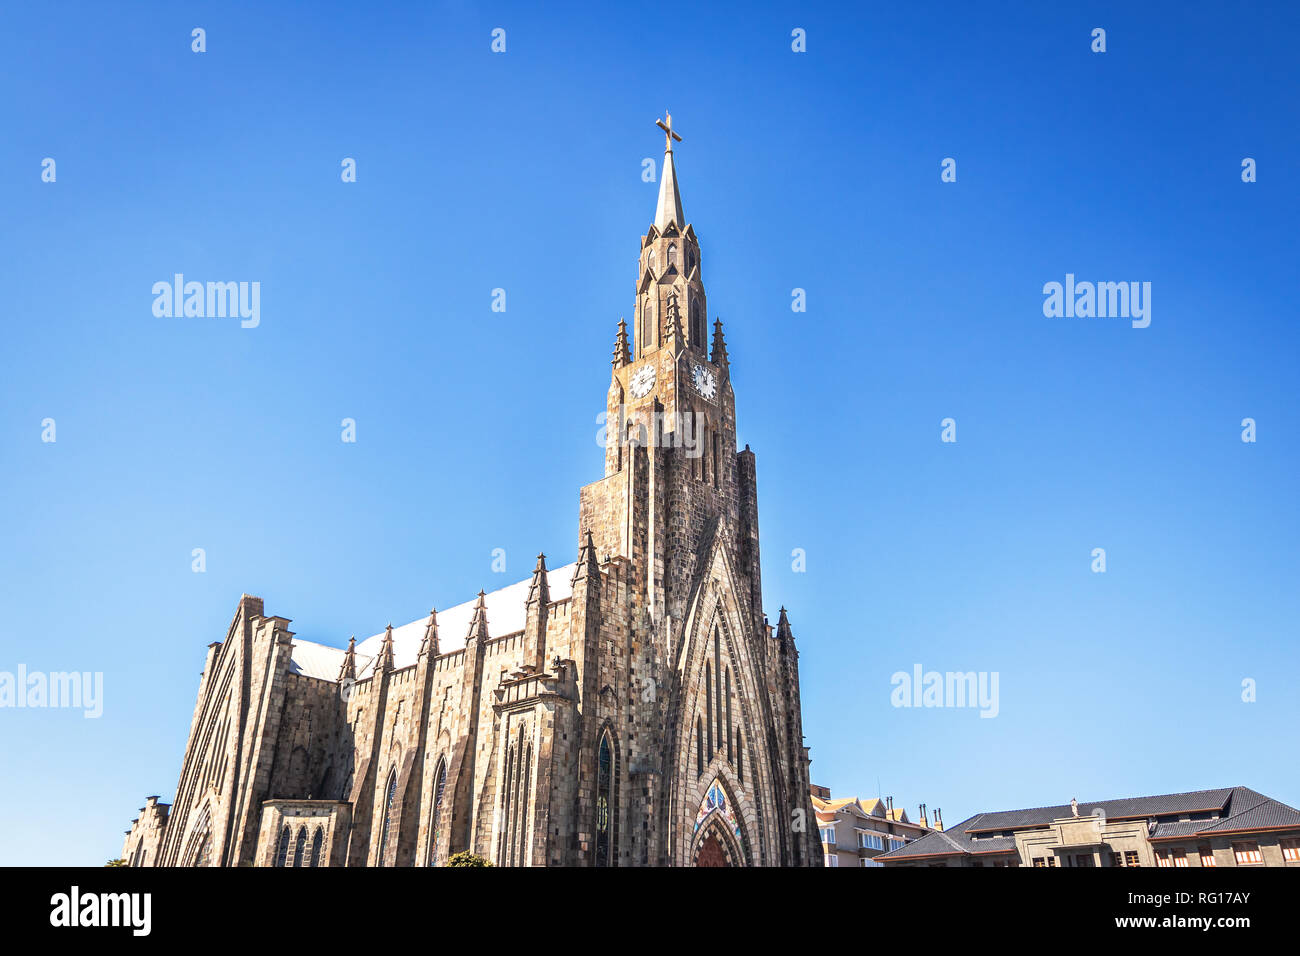 Canela cathédrale de pierre (Notre Dame de Lourdes) - Canela, Rio Grande do Sul, Brésil Banque D'Images